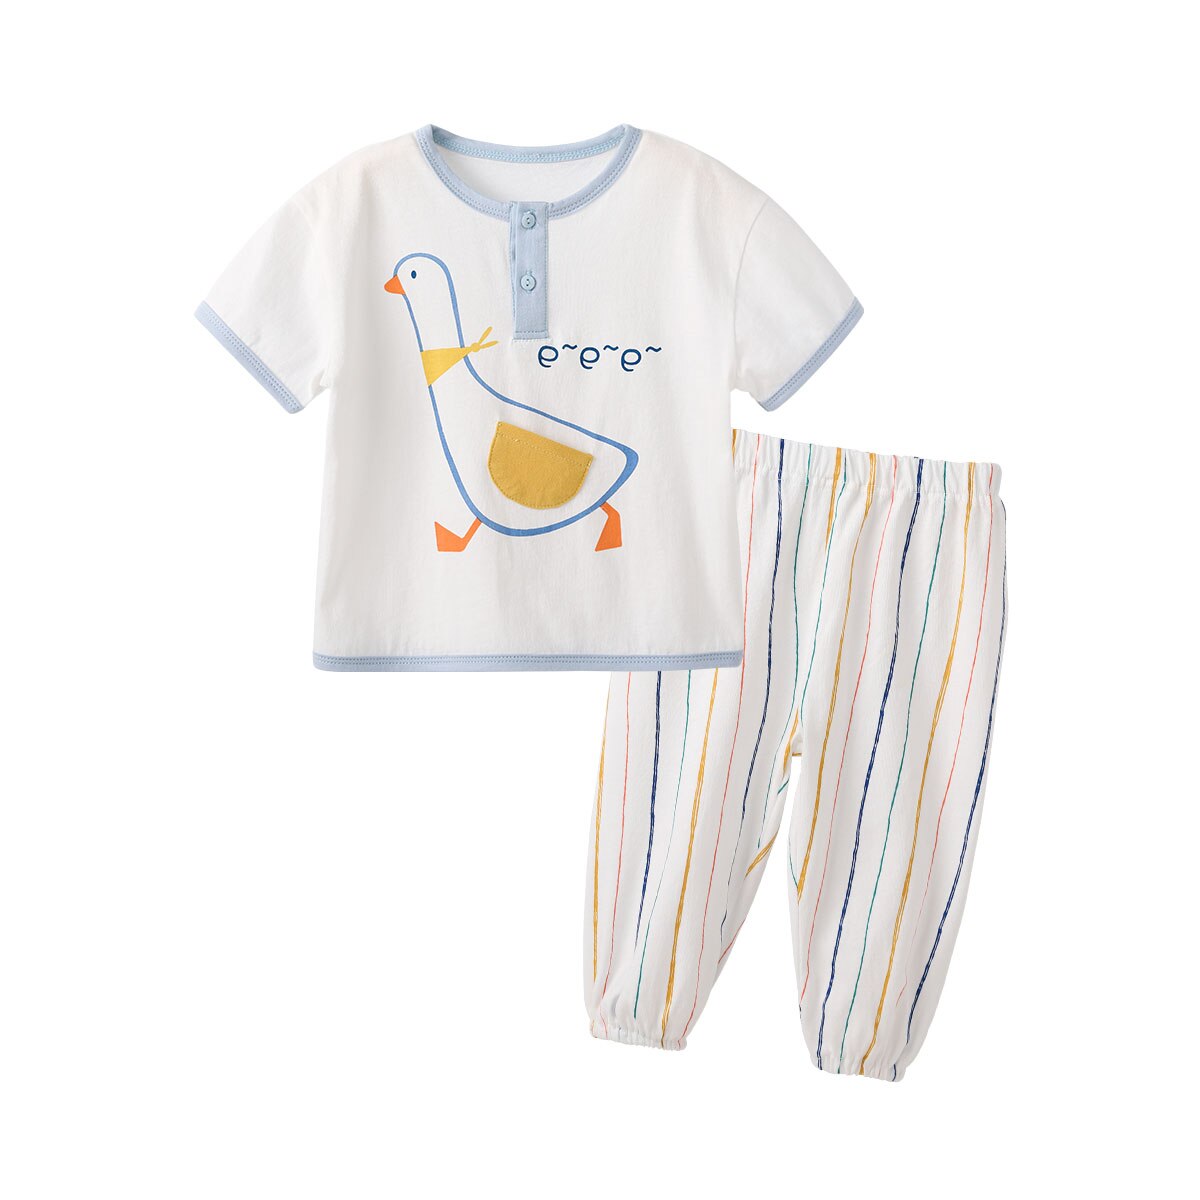 Toddler Unisex 2 Pack Clothing Set Short Sleeve Co...